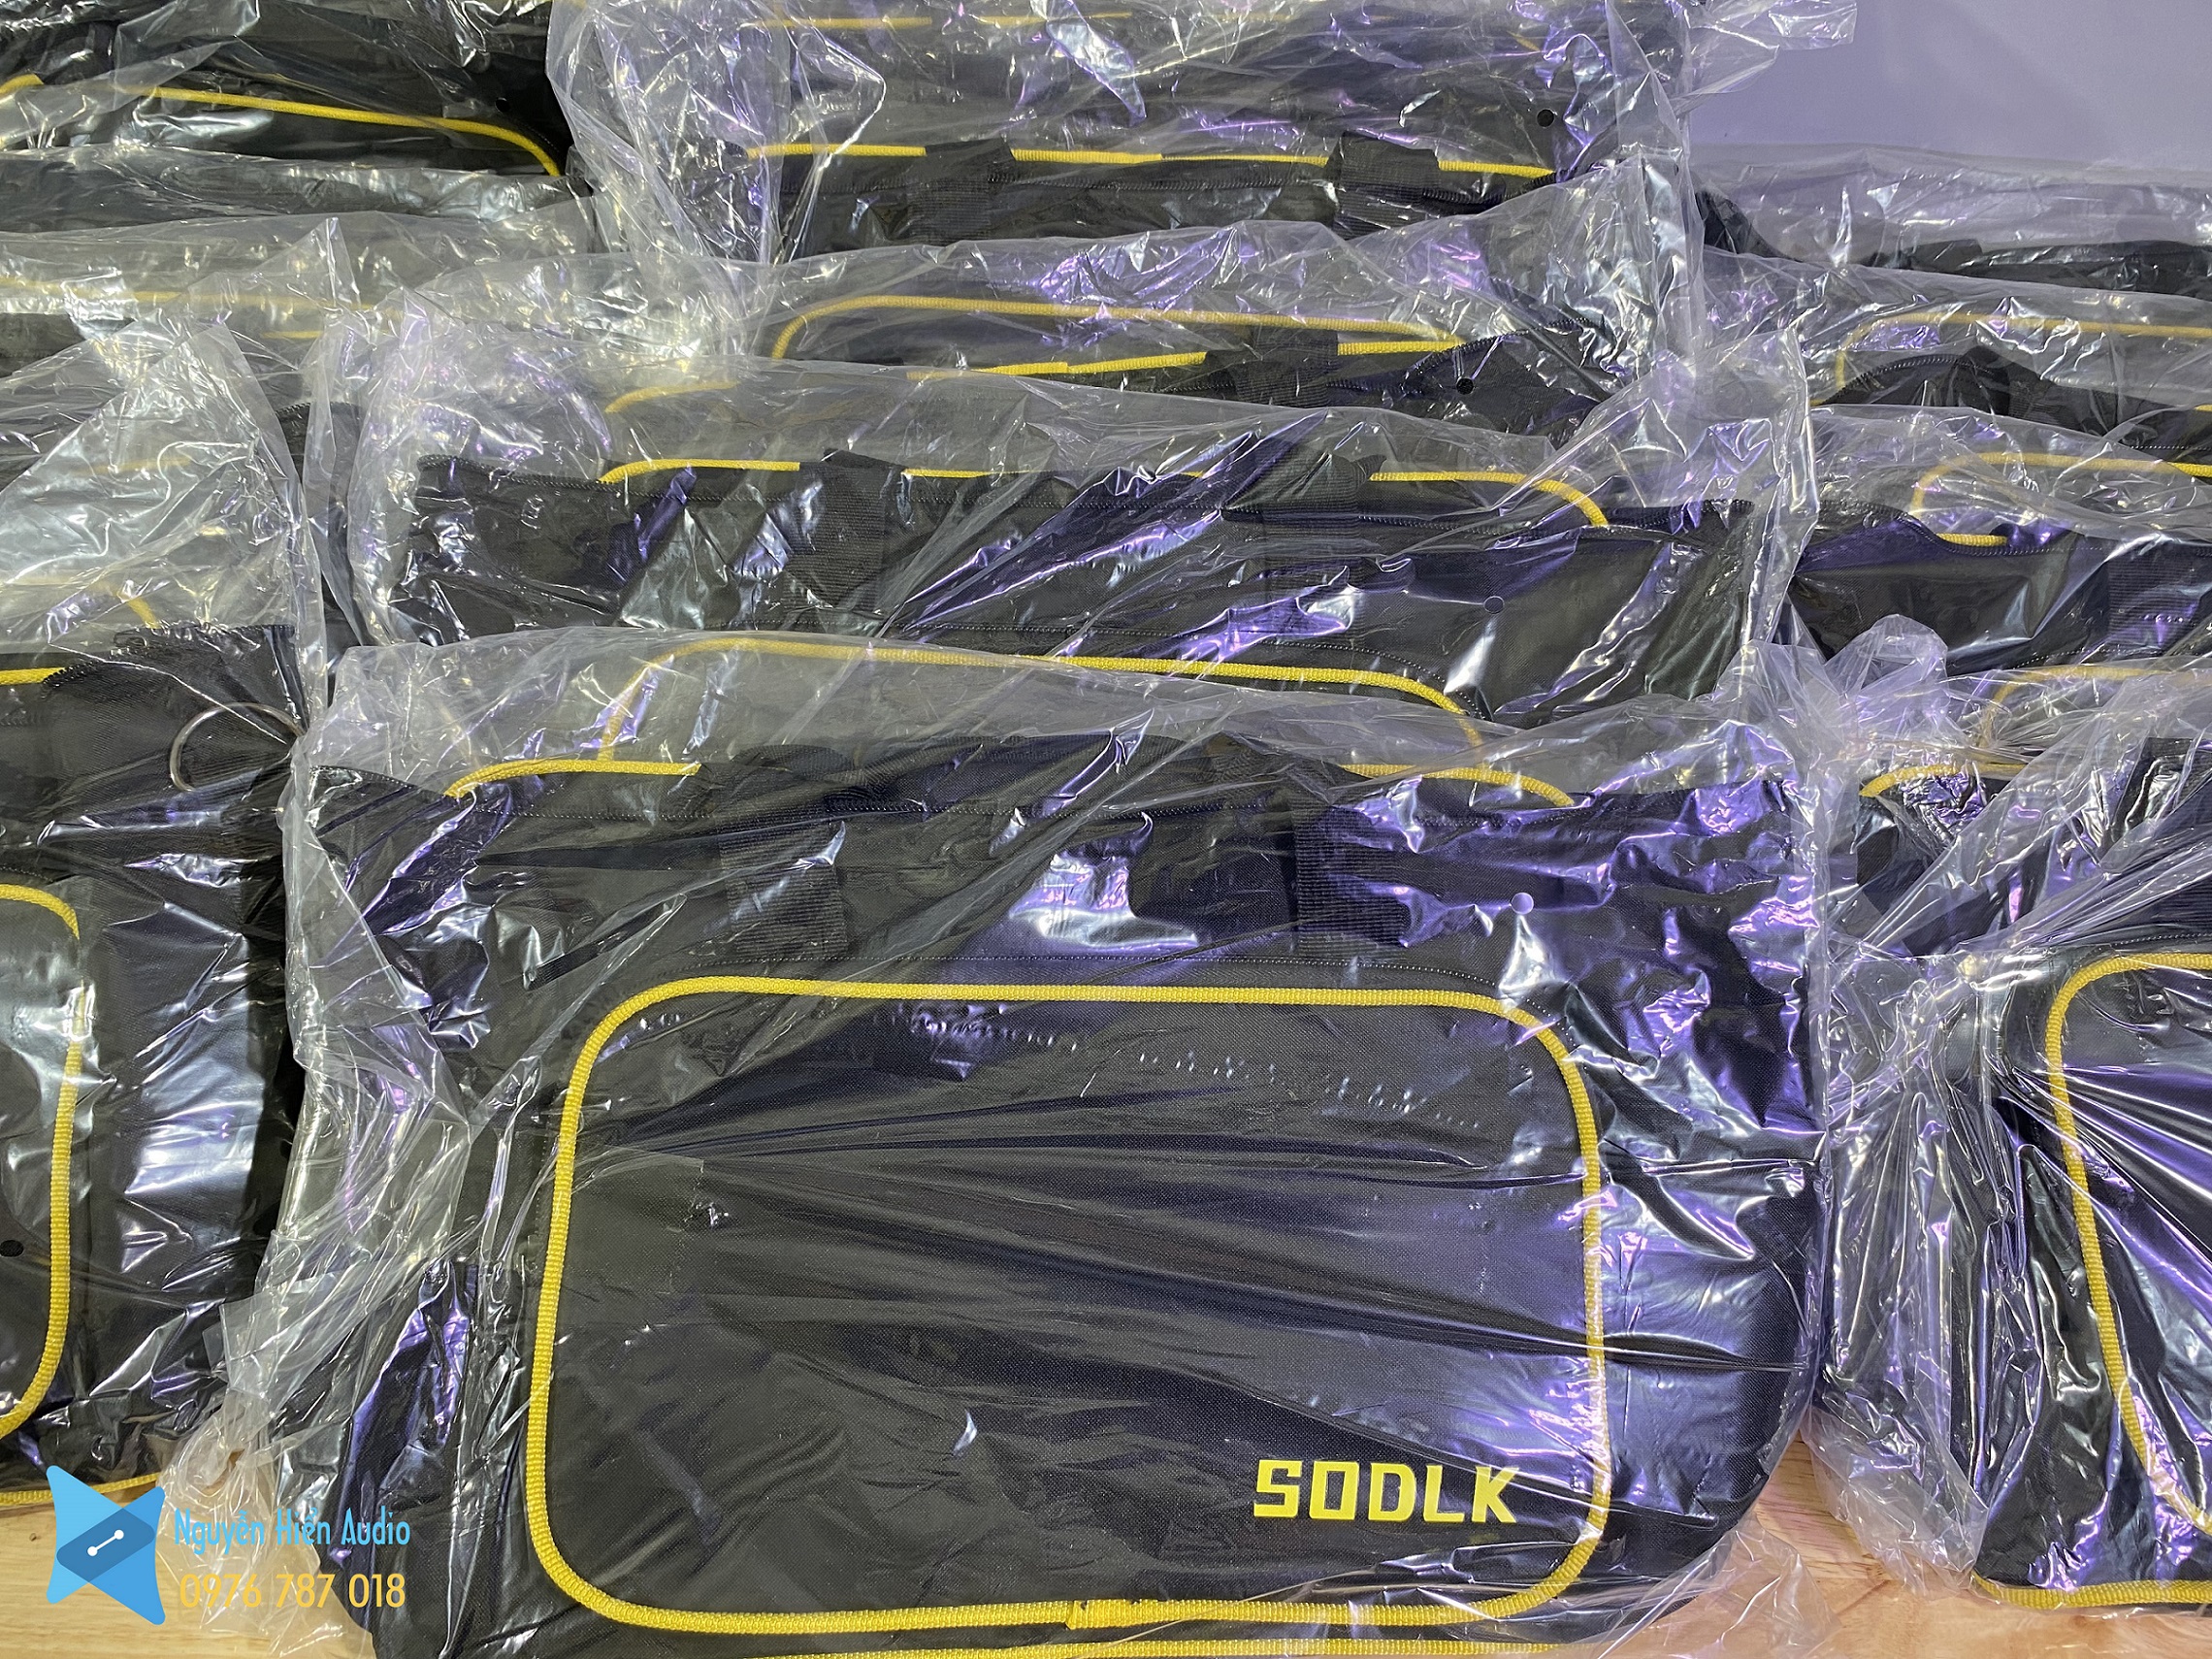 Balo, túi đựng chống sốc chính h.ãng cho loa Sodlk S1115, Sodlk S1314, Sounarc K2…